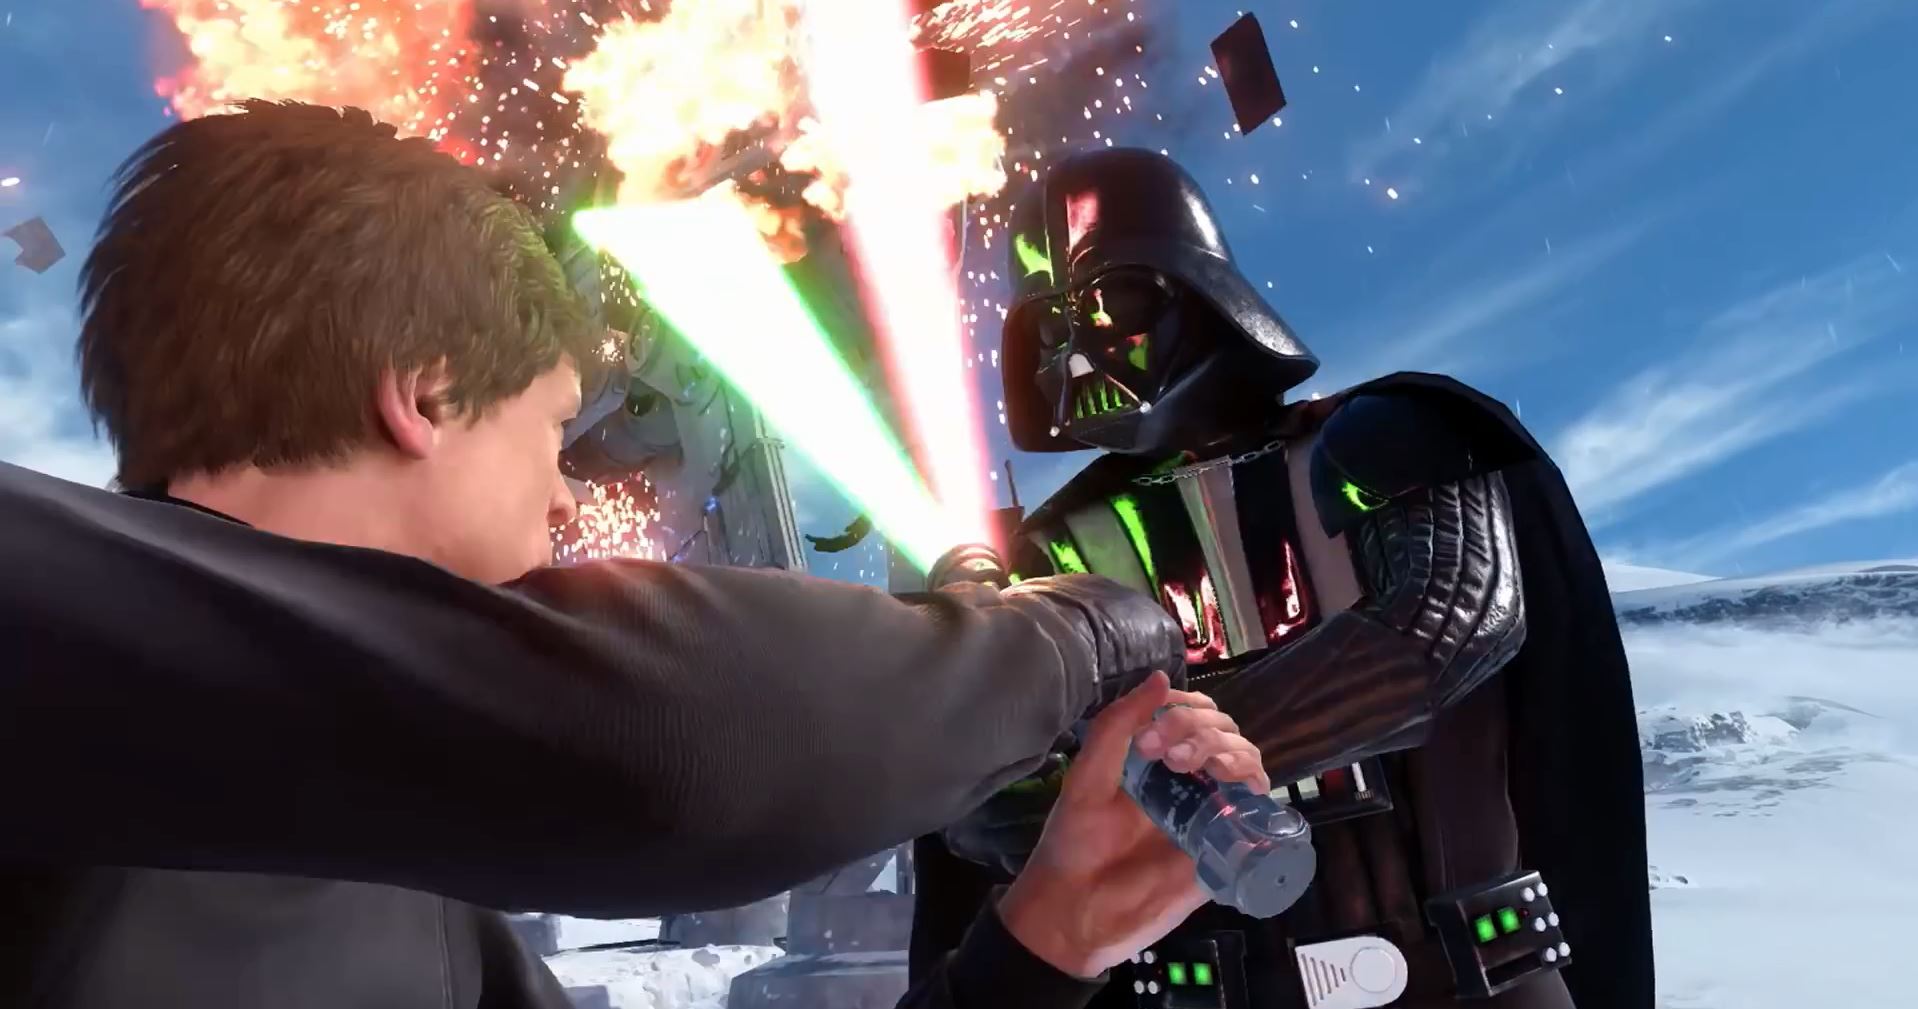 Darth Vader and Luke Skywalker duel on Hoth - Star Wars Battlefront Preview